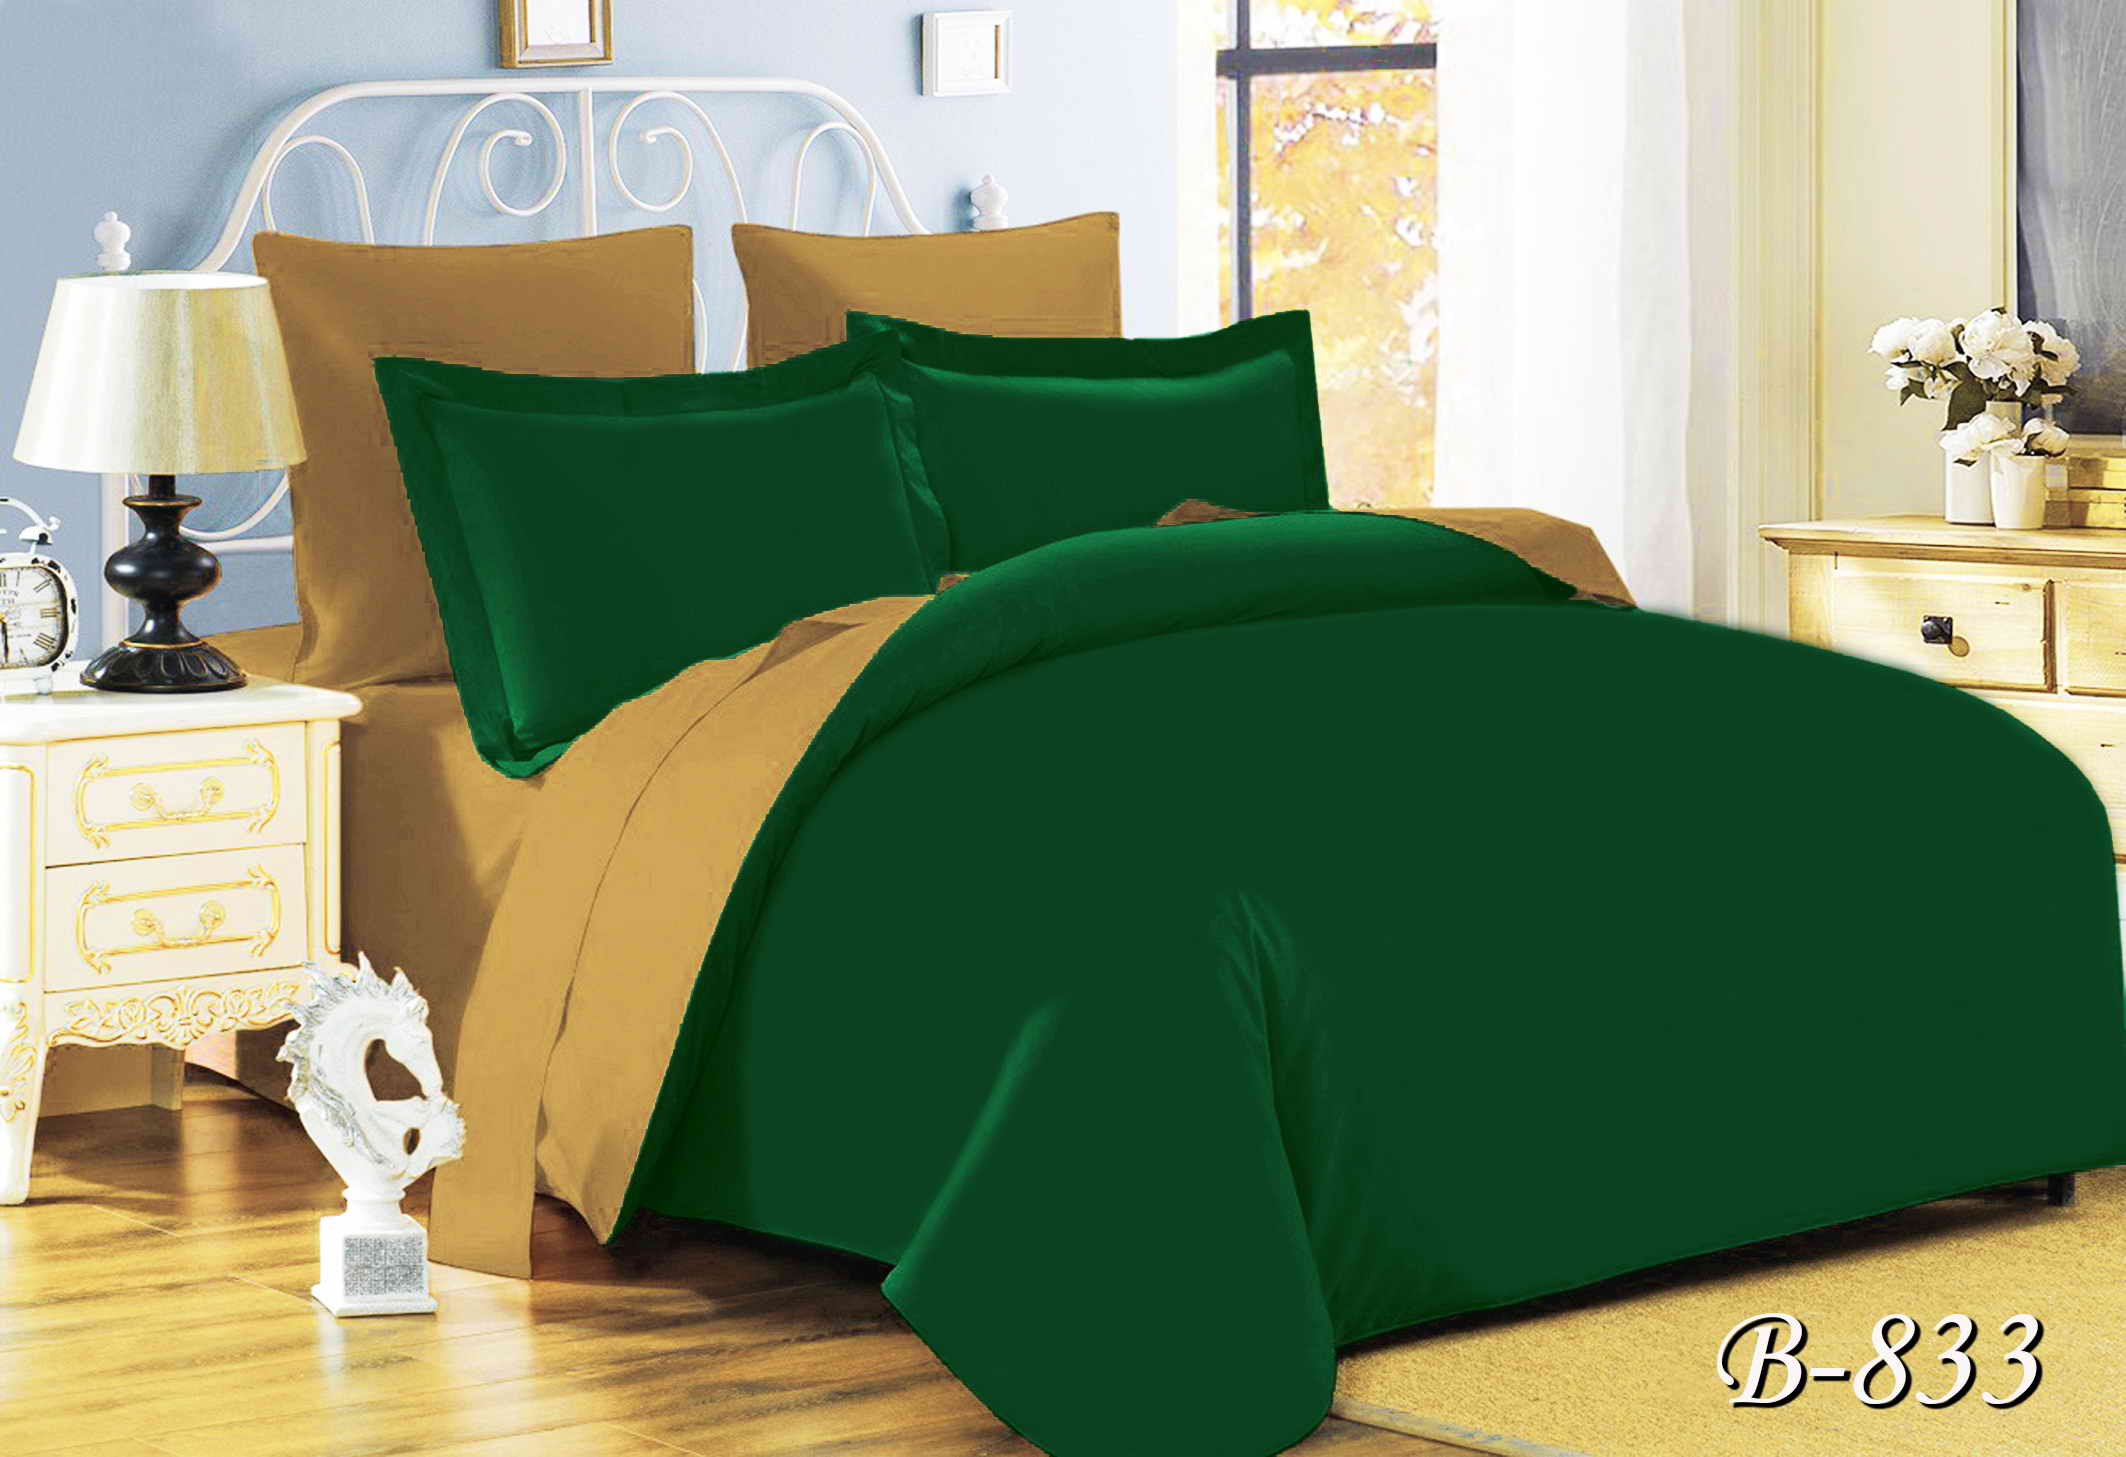 Полуторное постельное белье Тет-А-Тет П-833 "Темно-зеленый"